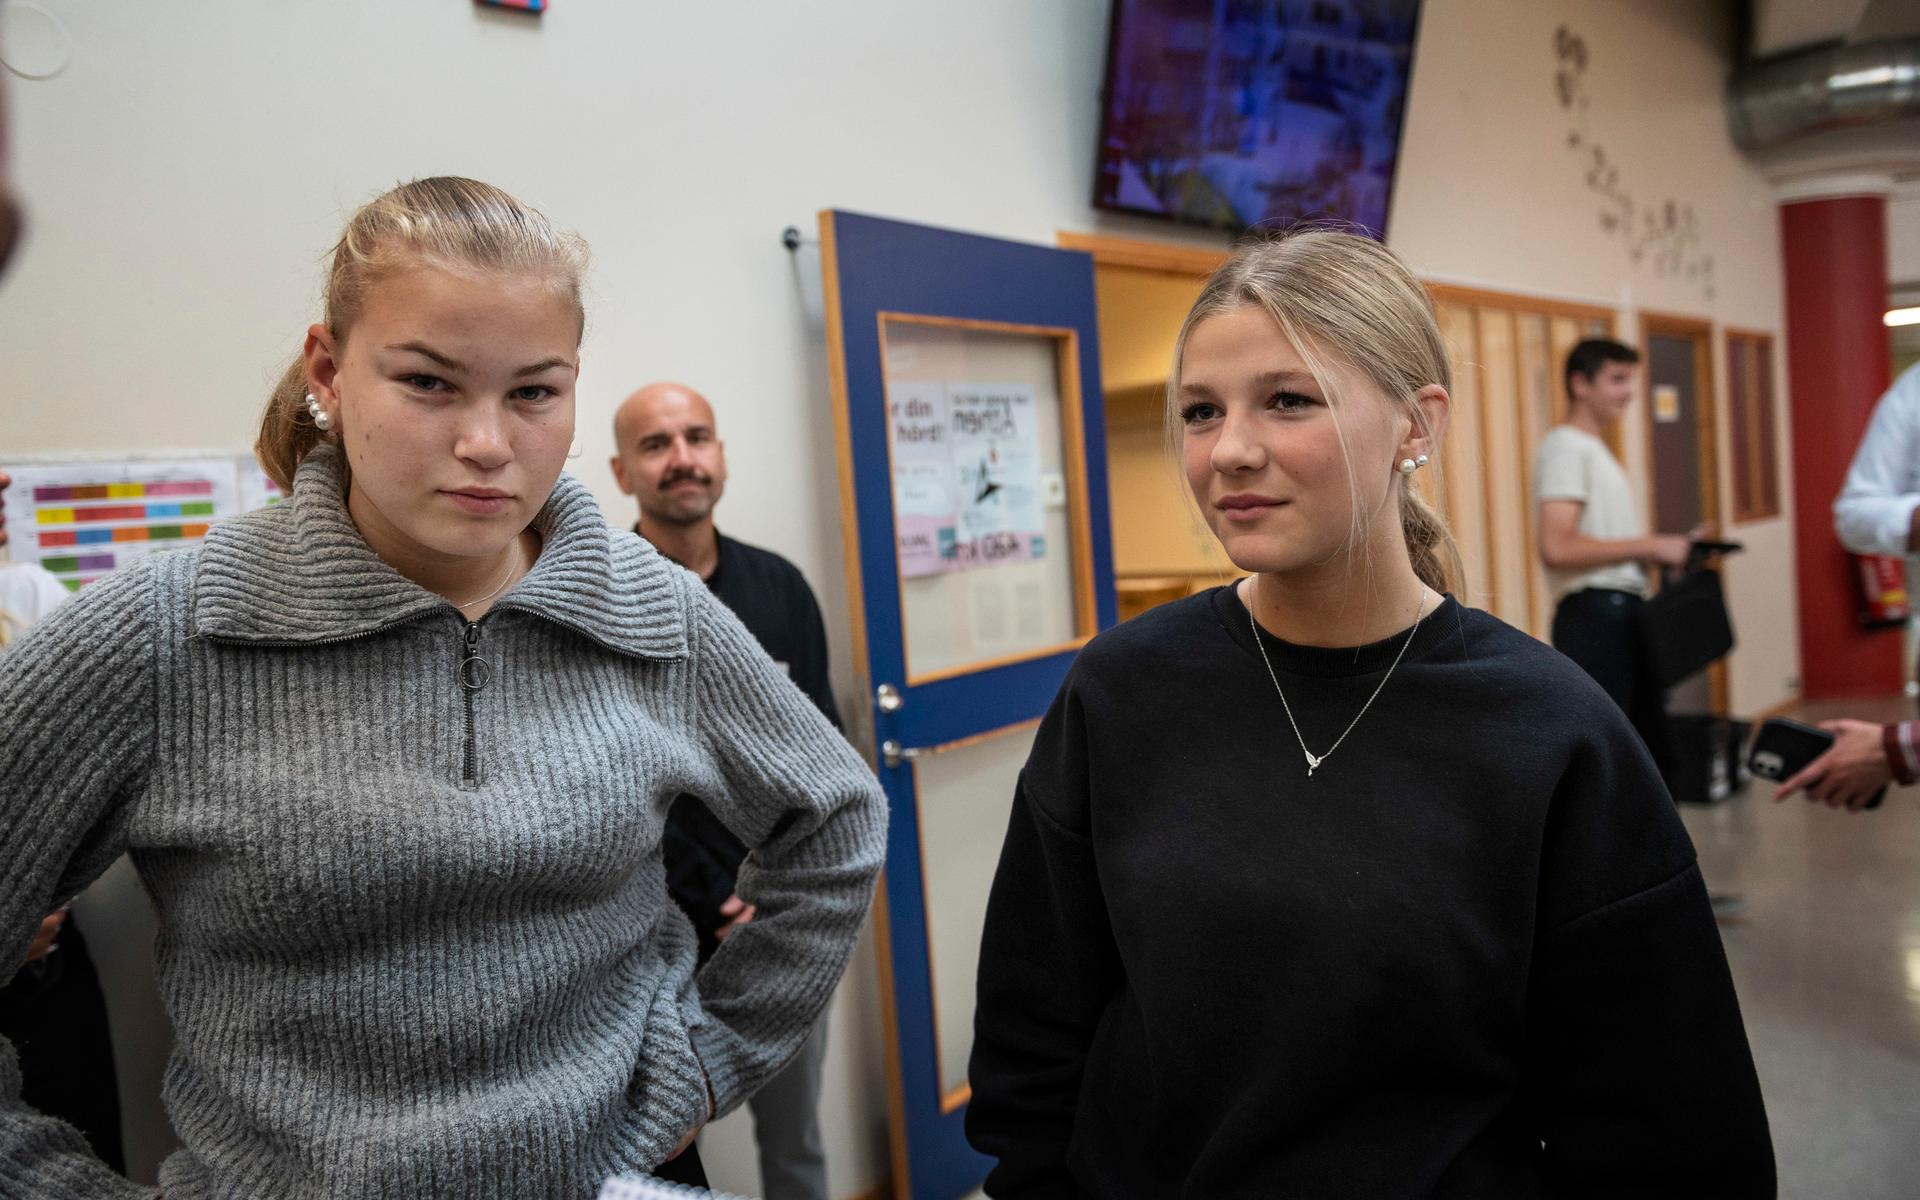 Niondeklassarna Alice Fält (tv) och Elvira Liljestrand (th) har lyssnat till Johan Pehrson (L). Främsta budskapet? ”Att vi ska satsa på skolan, att den är viktig”, säger Alice.